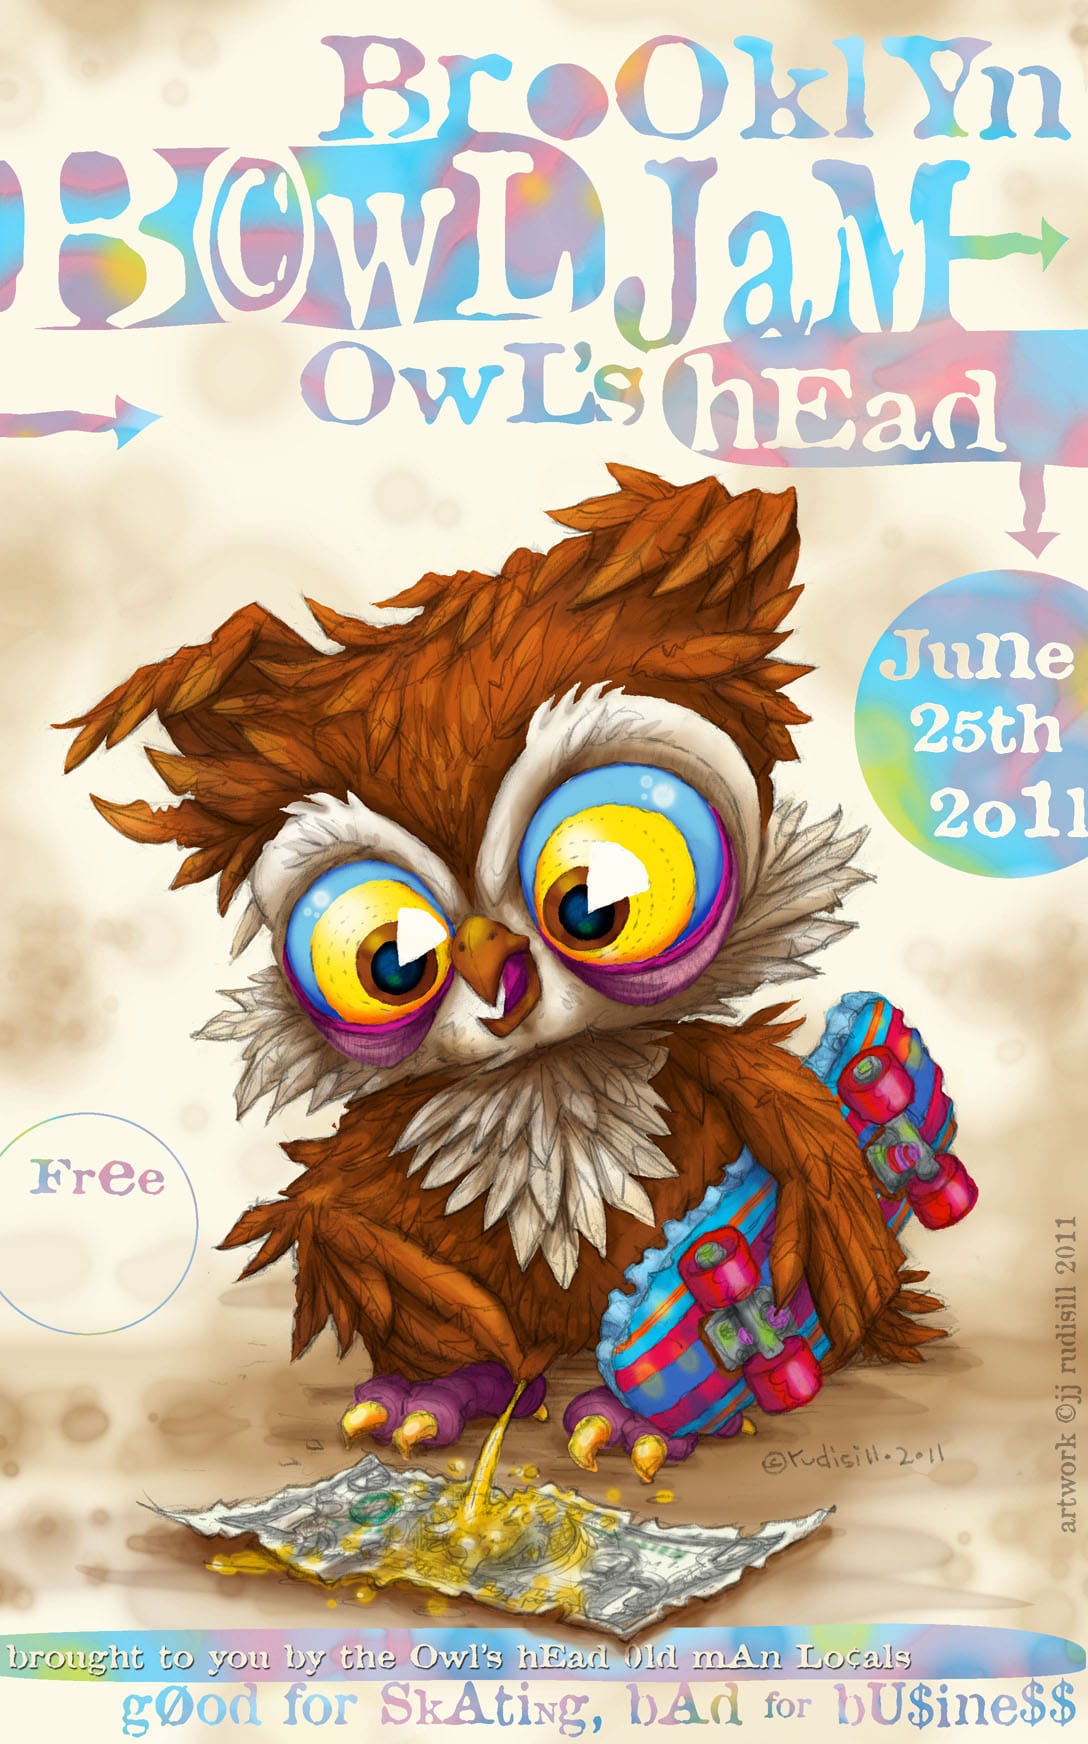 Owls' Head